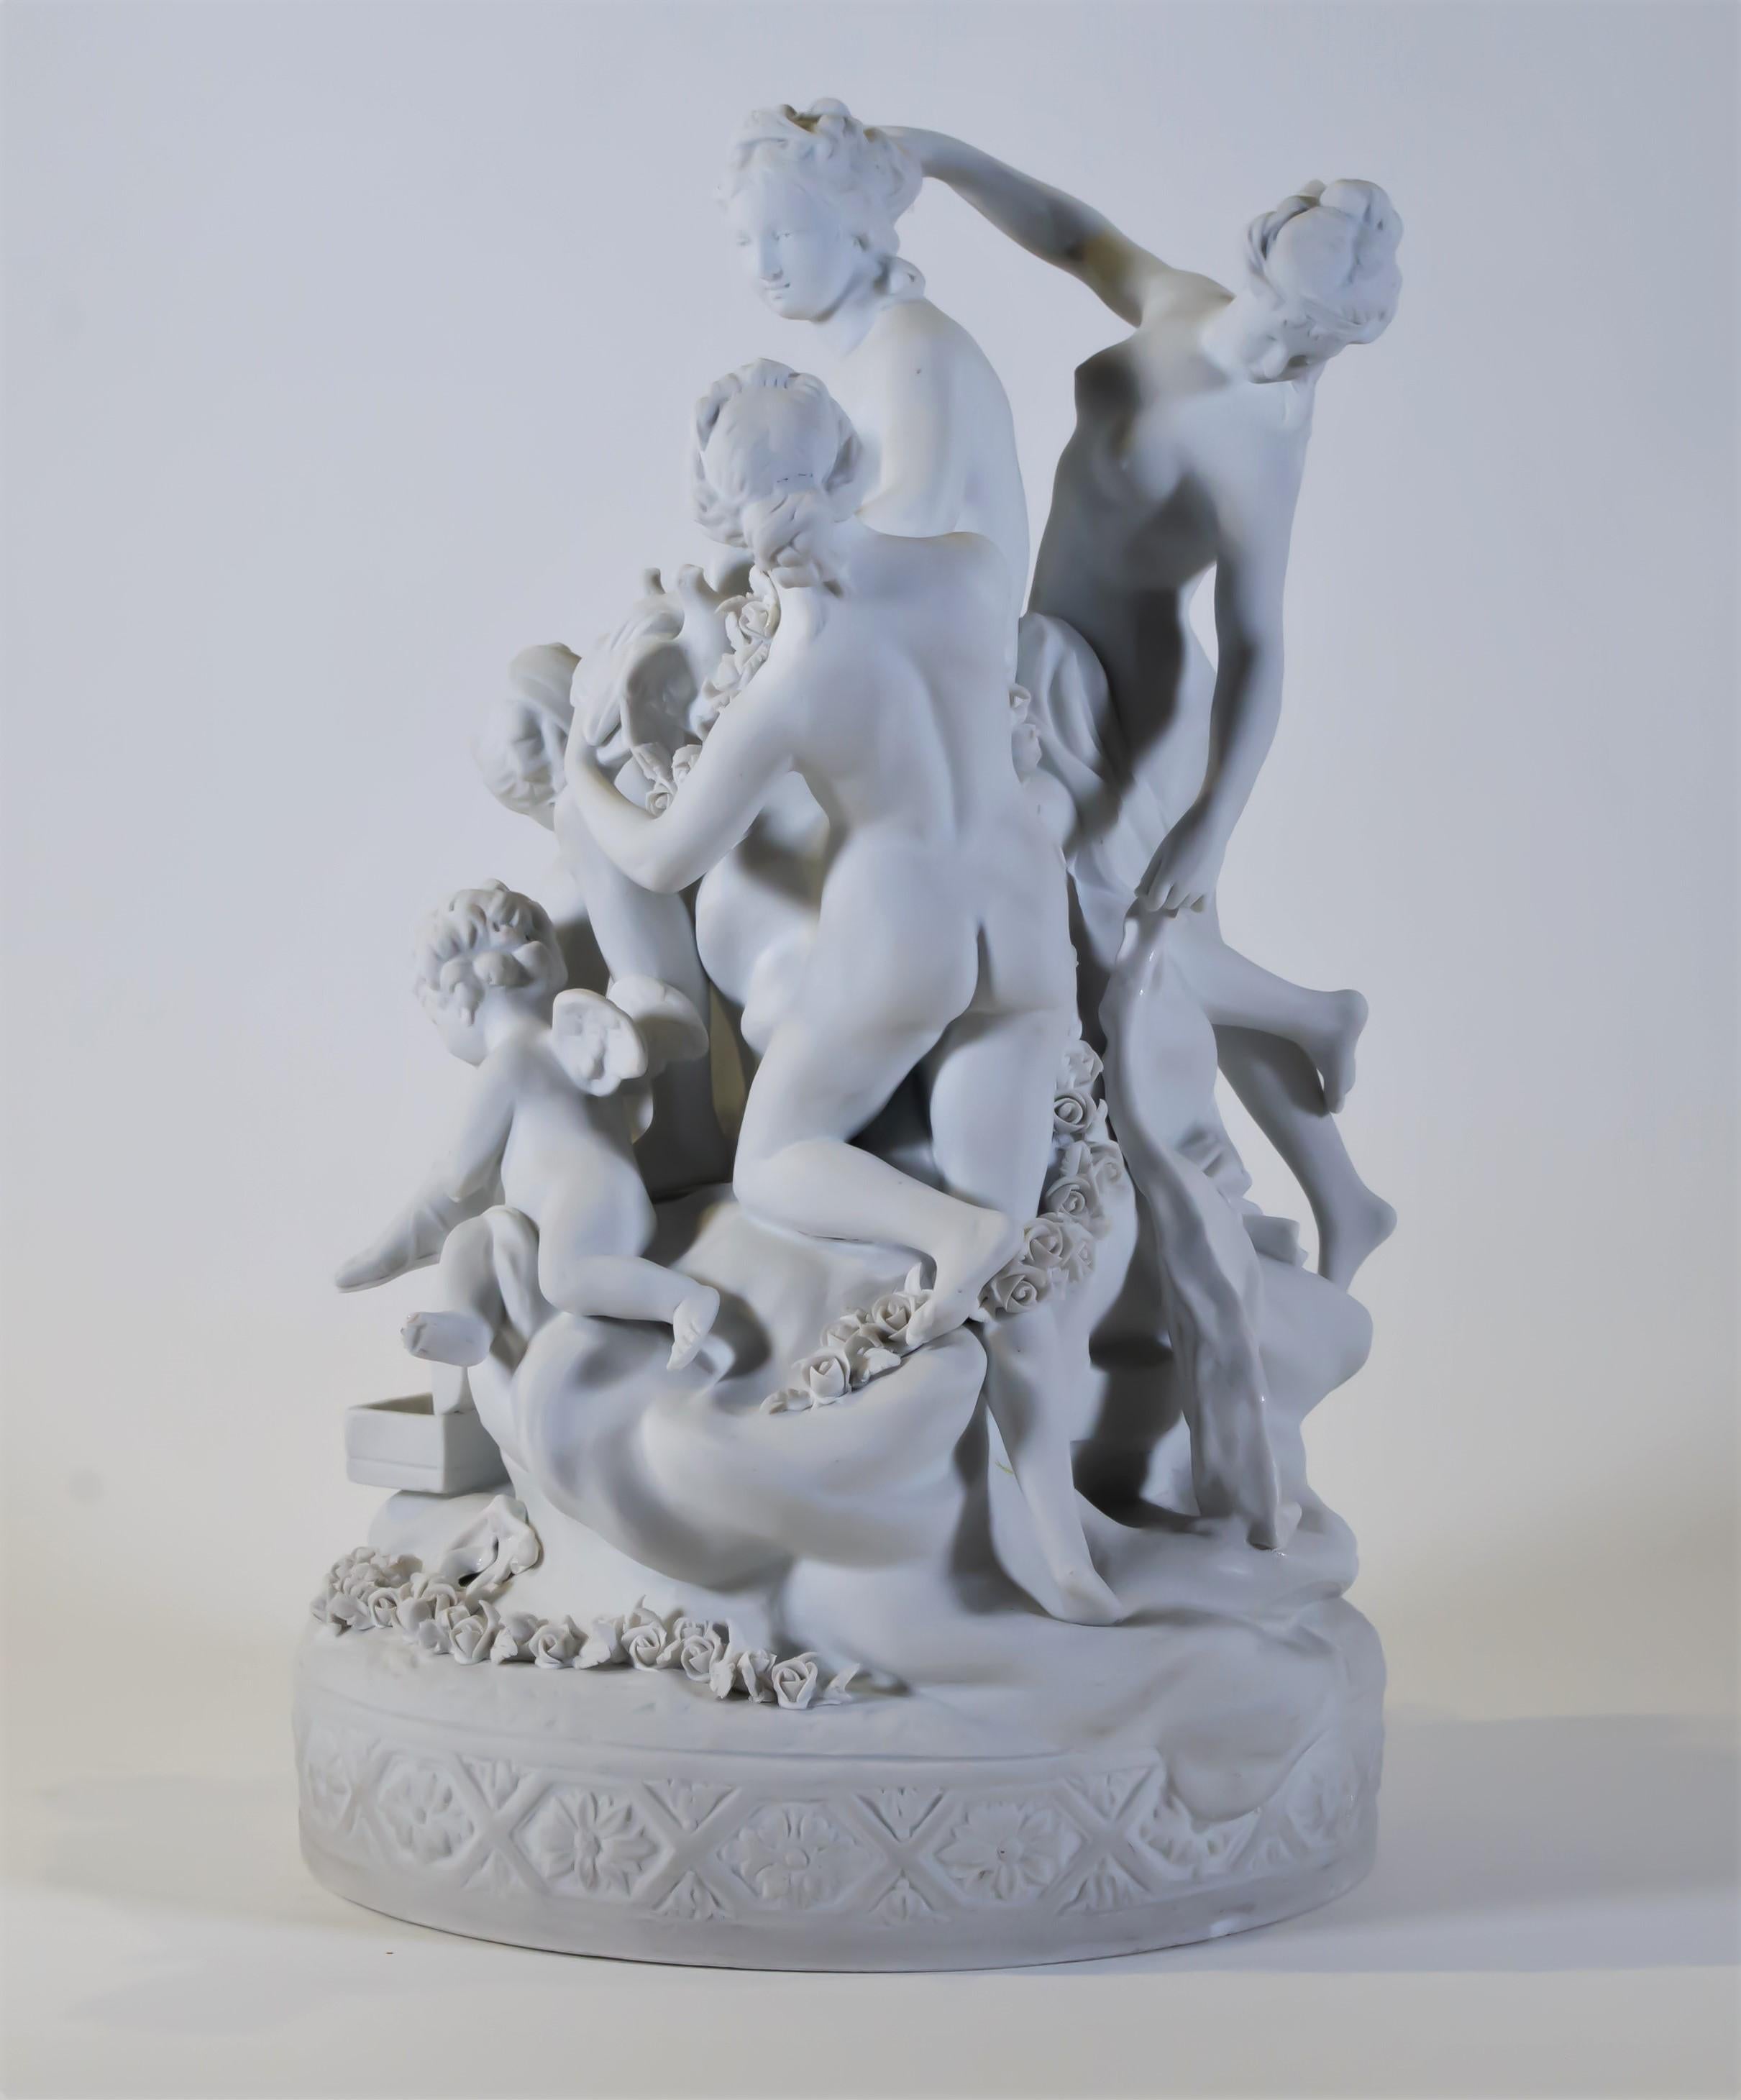 Groupe néoclassique en porcelaine de Sèvres de style Louis XVI du 19ème siècle, représentant une jeune fille et ses servantes. Au centre se trouve la jeune fille en chef, entourée de ses assistants. Un préposé cueille des roses dans une boîte à